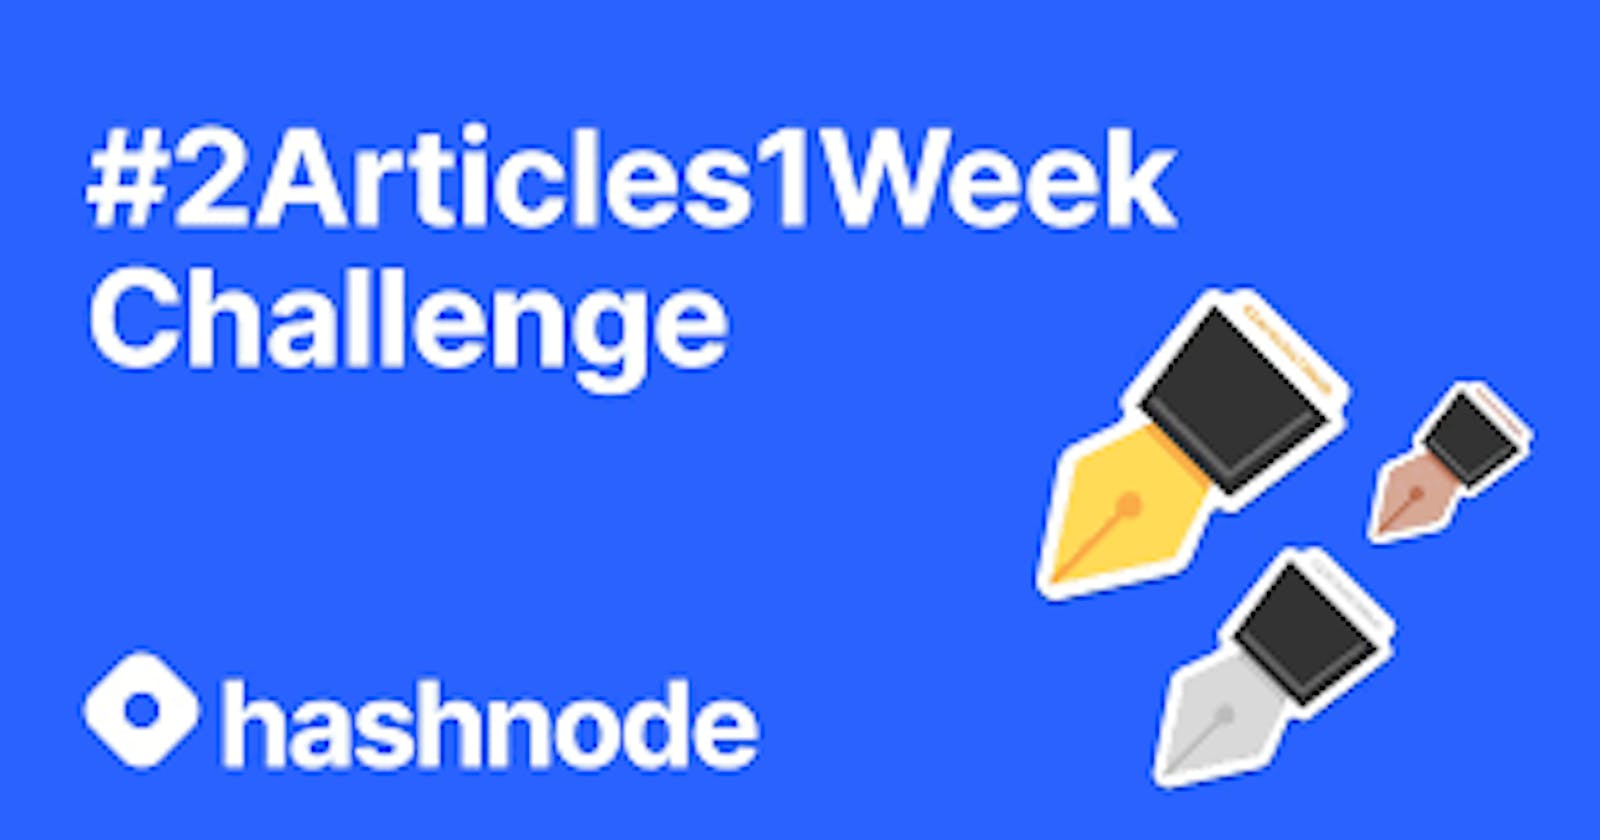 Hashnode's 2Articles1Week Challenge